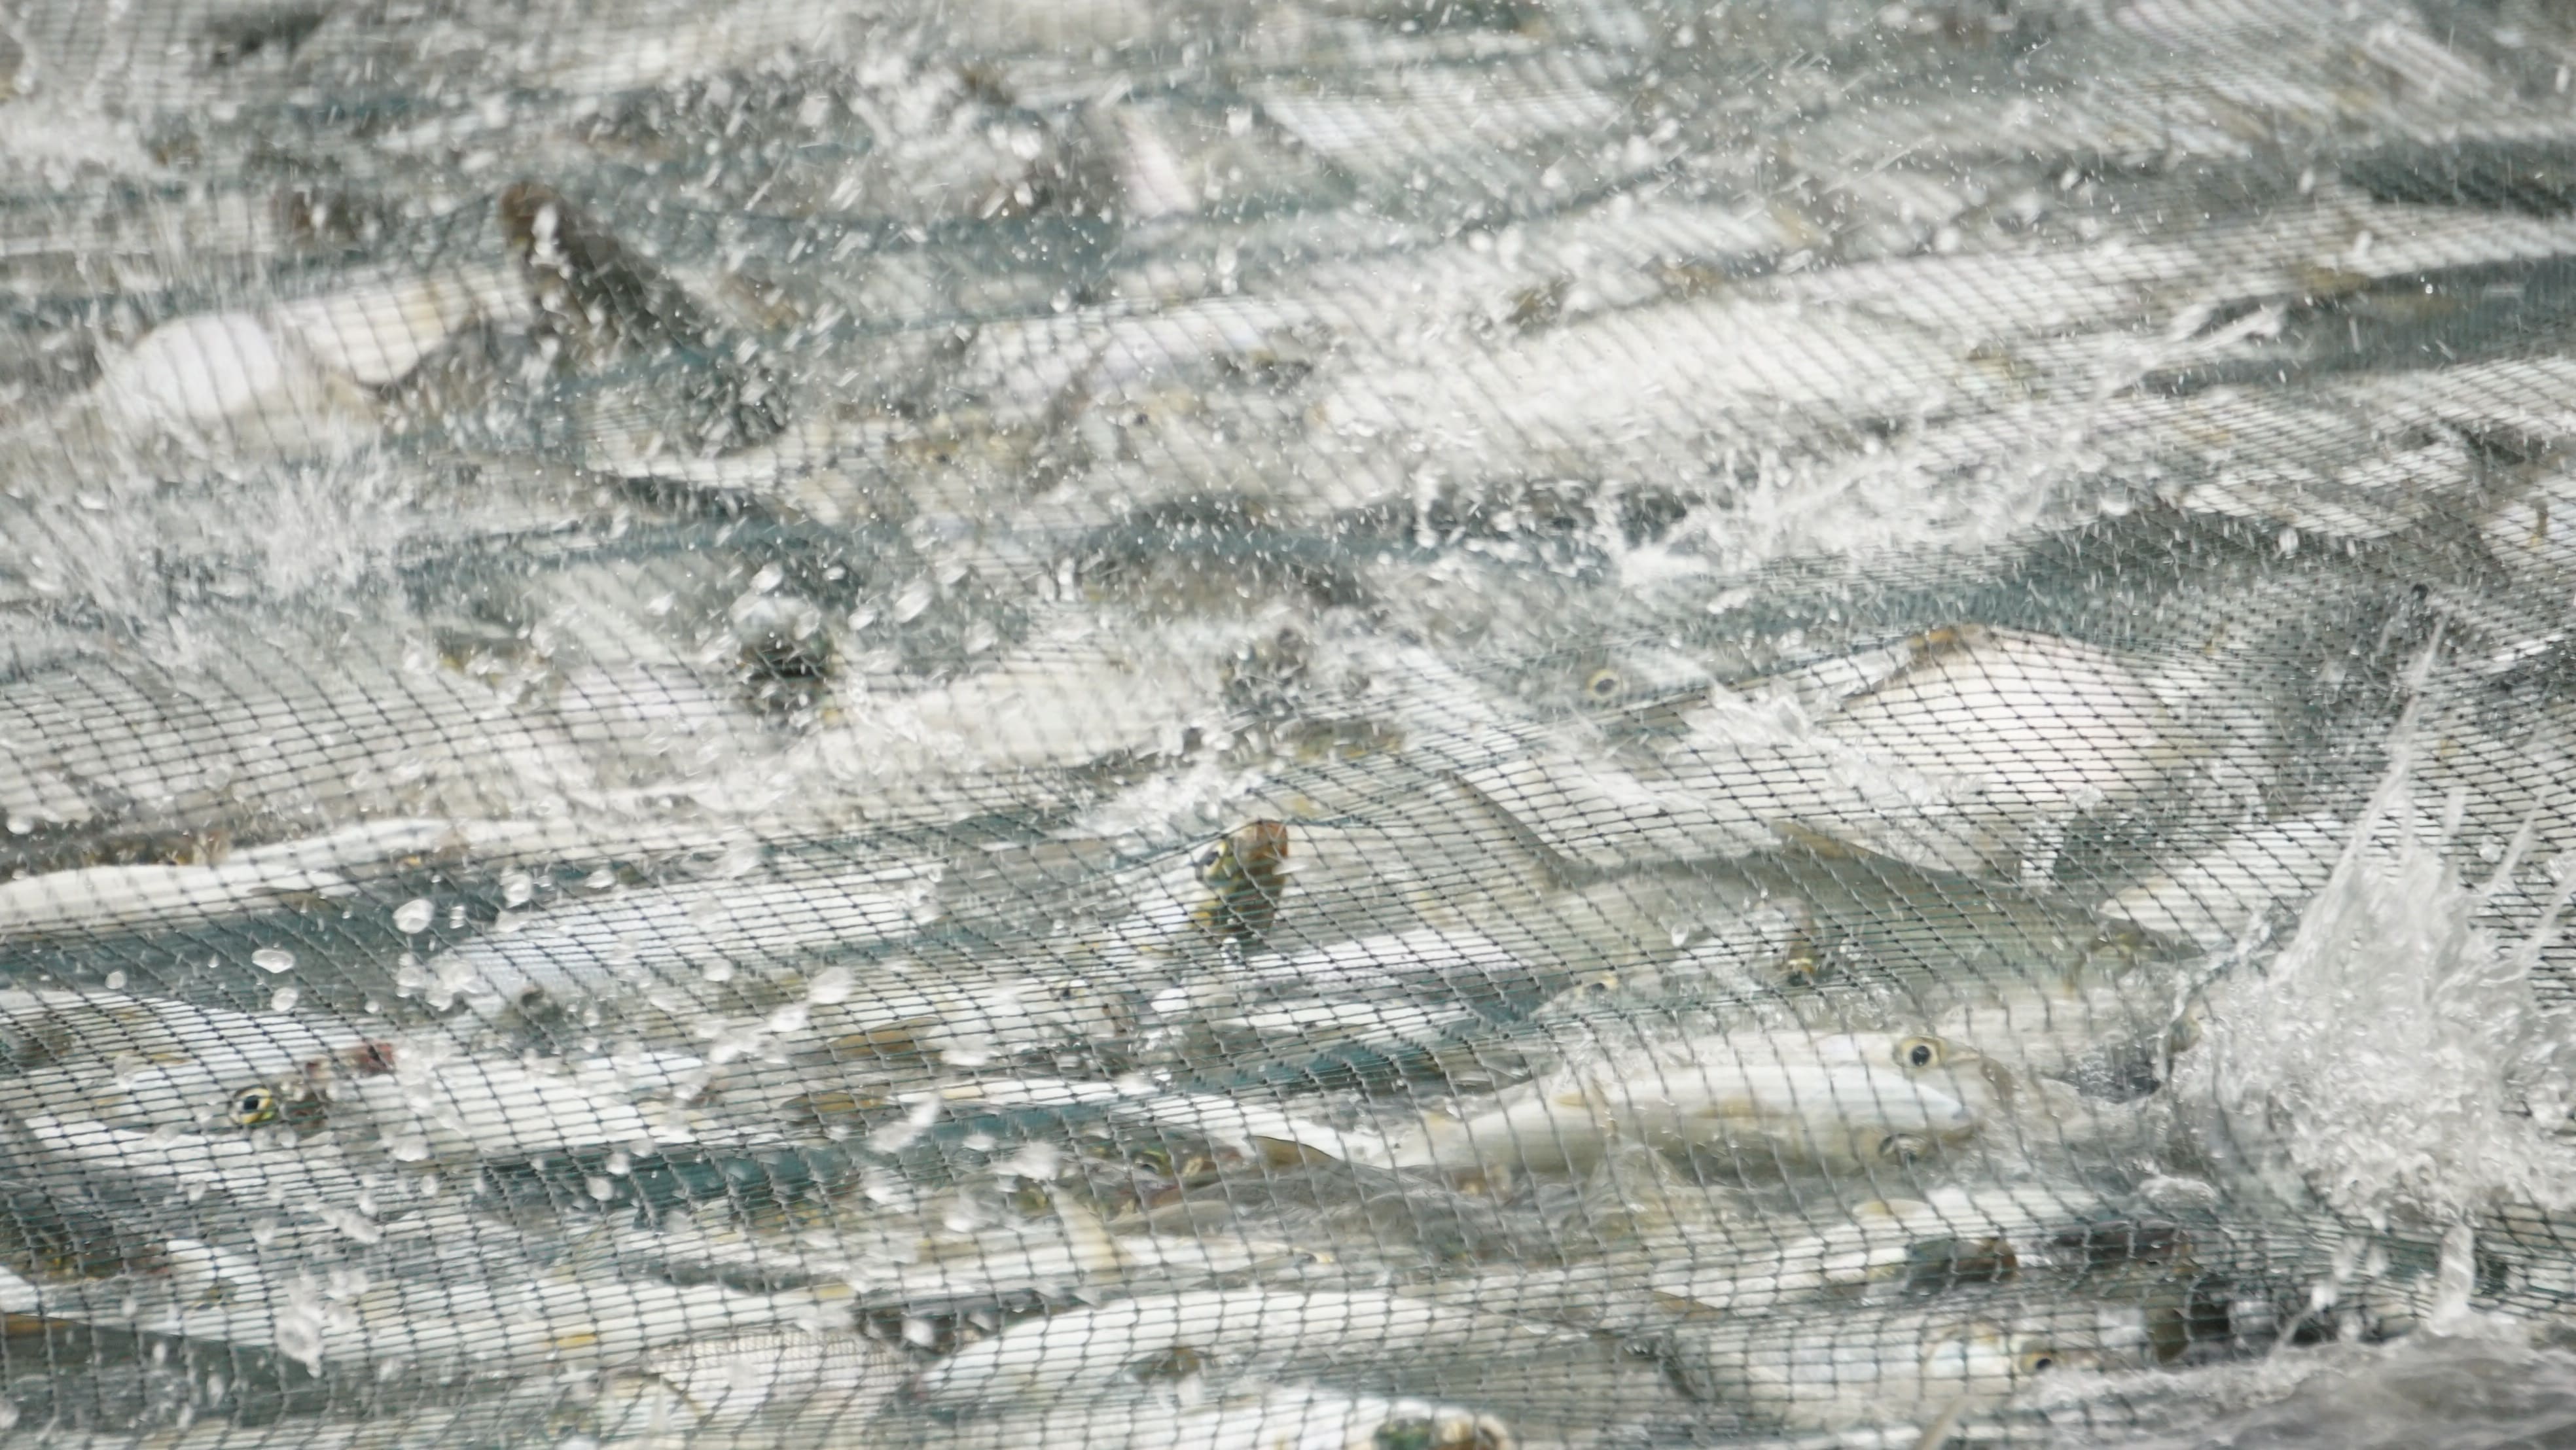 Kawanan ikan bandeng yang sedang dipanen menggunakan jaring dan berada dipermukaan kolam